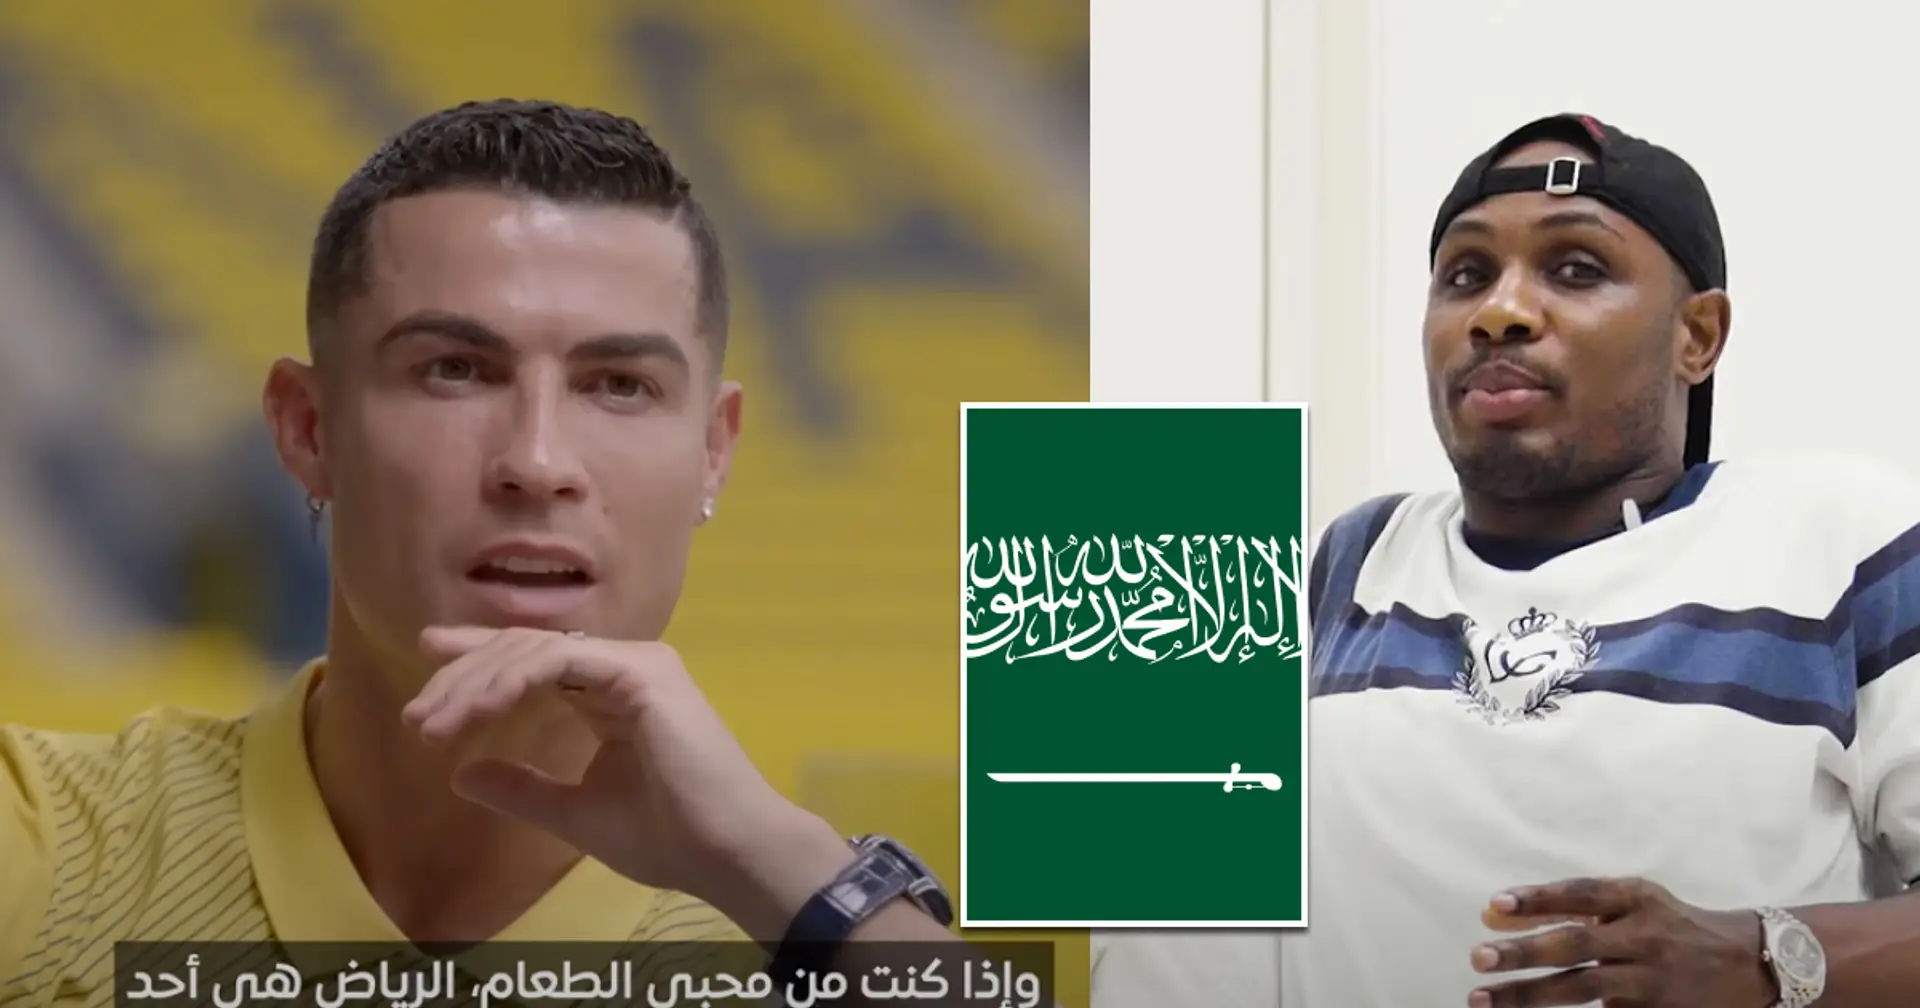 L'attaccante con un passato in Serie A non si nasconde: "In Arabia Saudita si gioca per soldi"